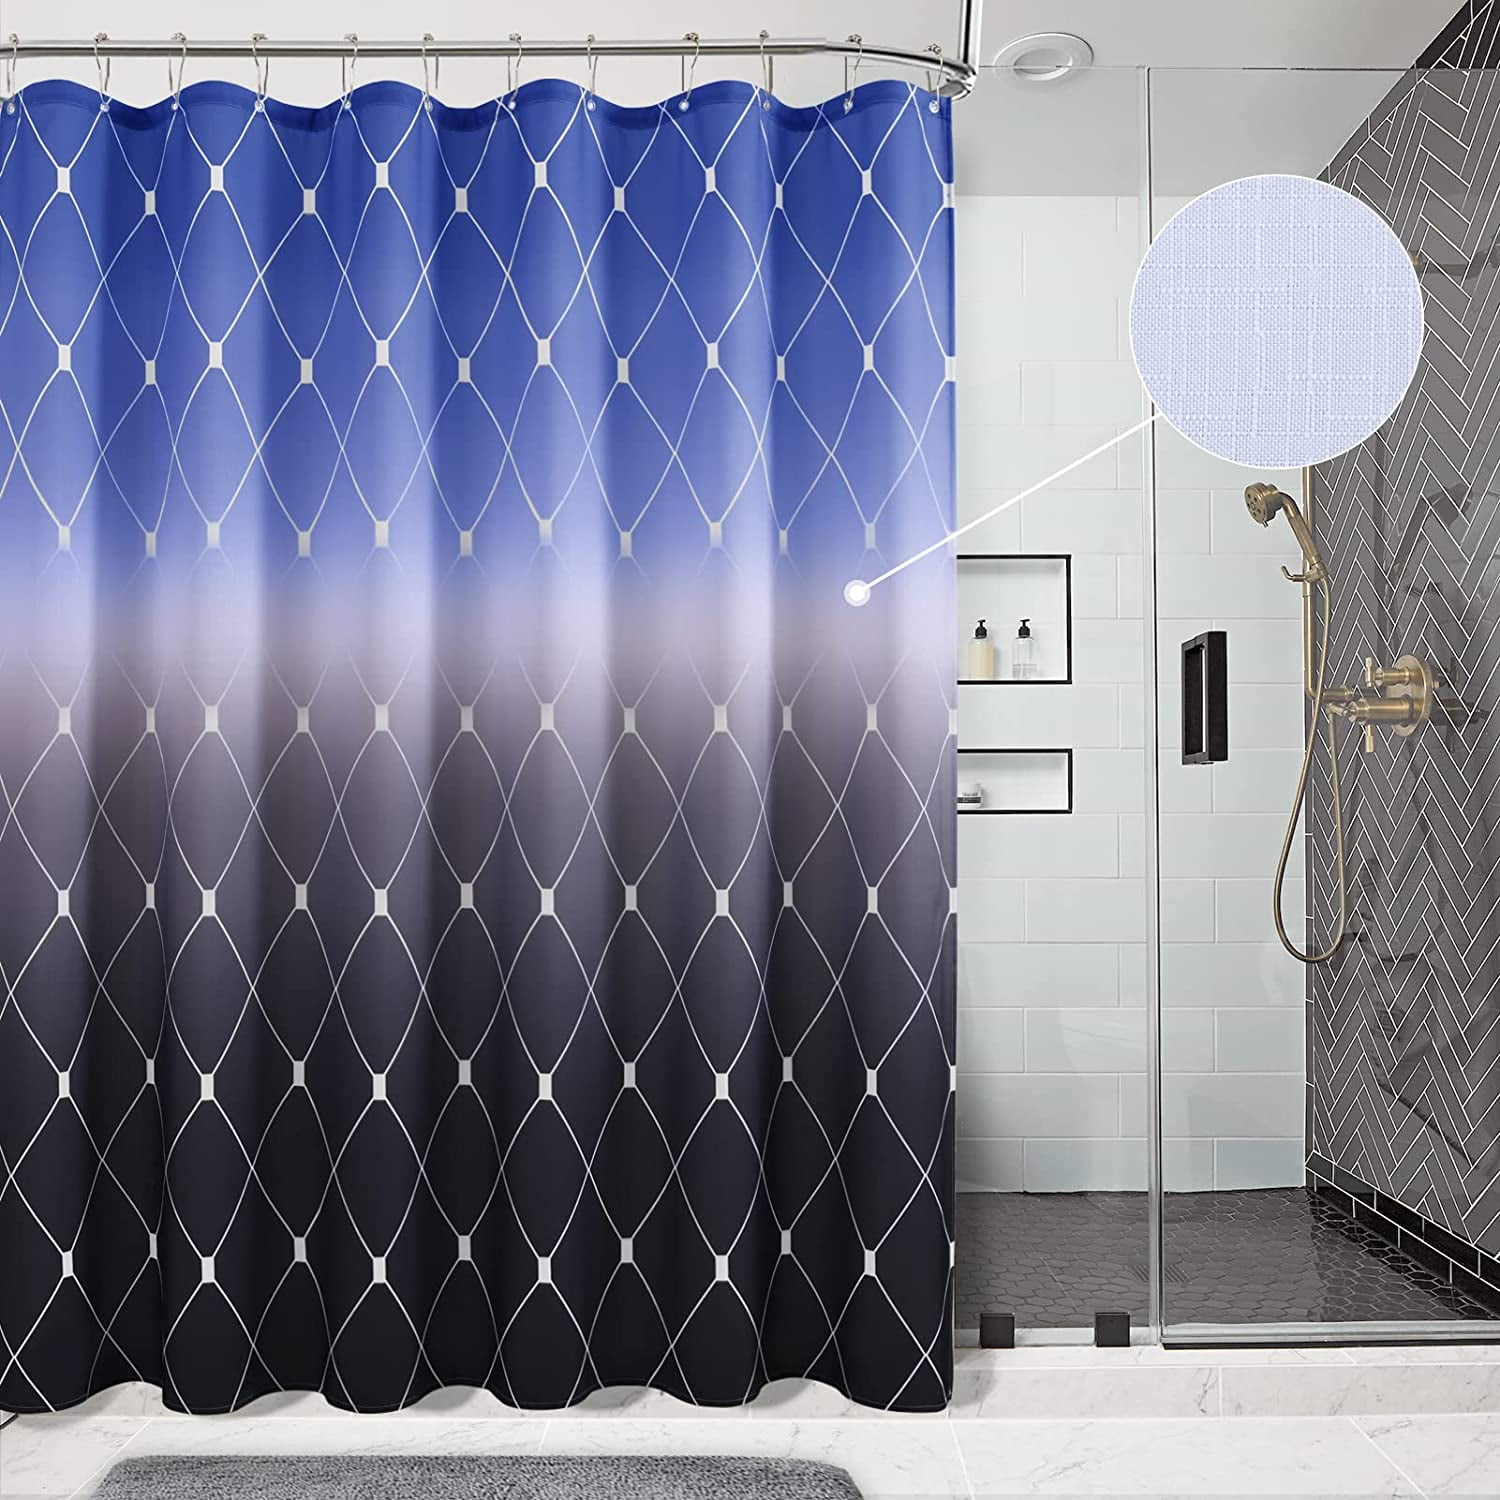  Popular Bath Sinatra Bathroom Luxury Glamorous Fabric